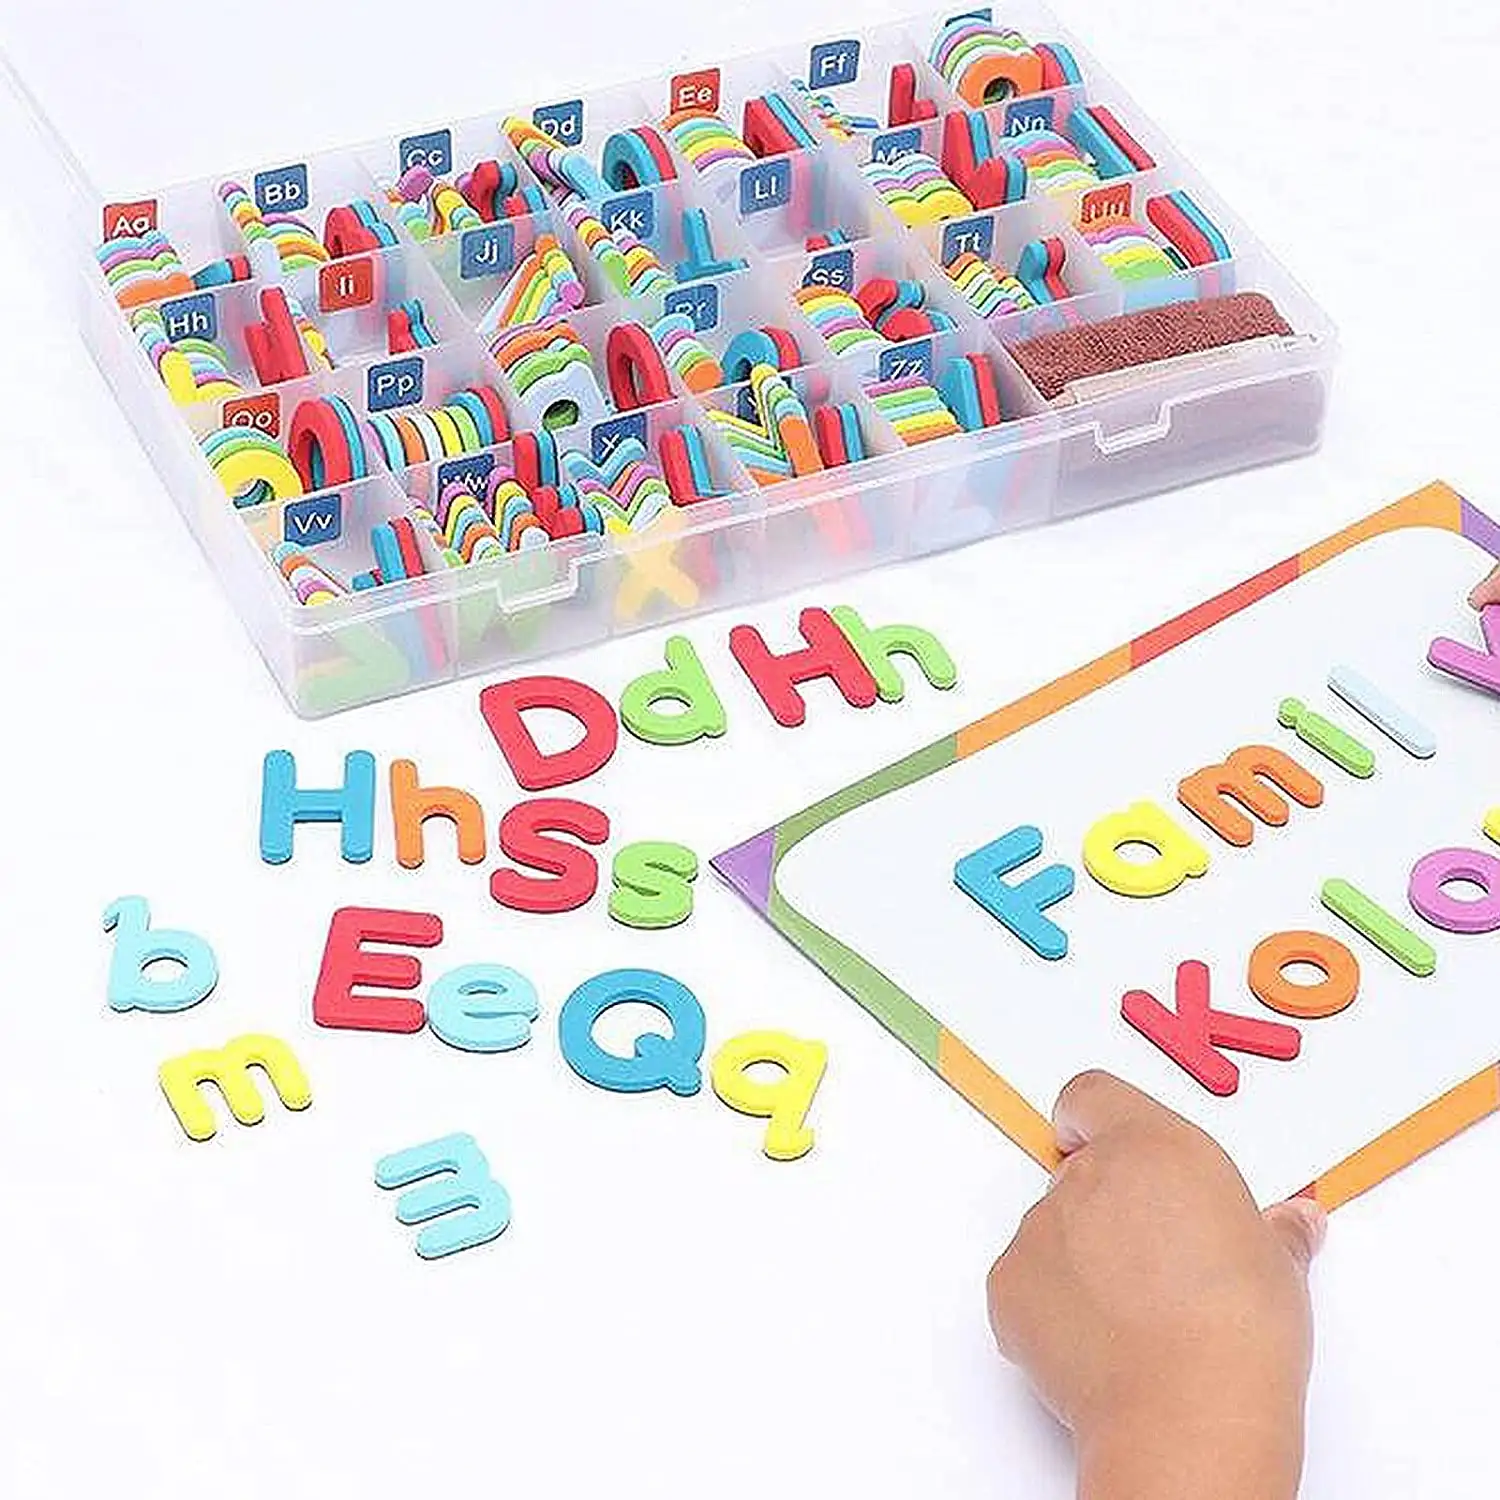 Juego de letras del alfabeto para niños de clase superior e inferior, juguetes de aprendizaje de escritura